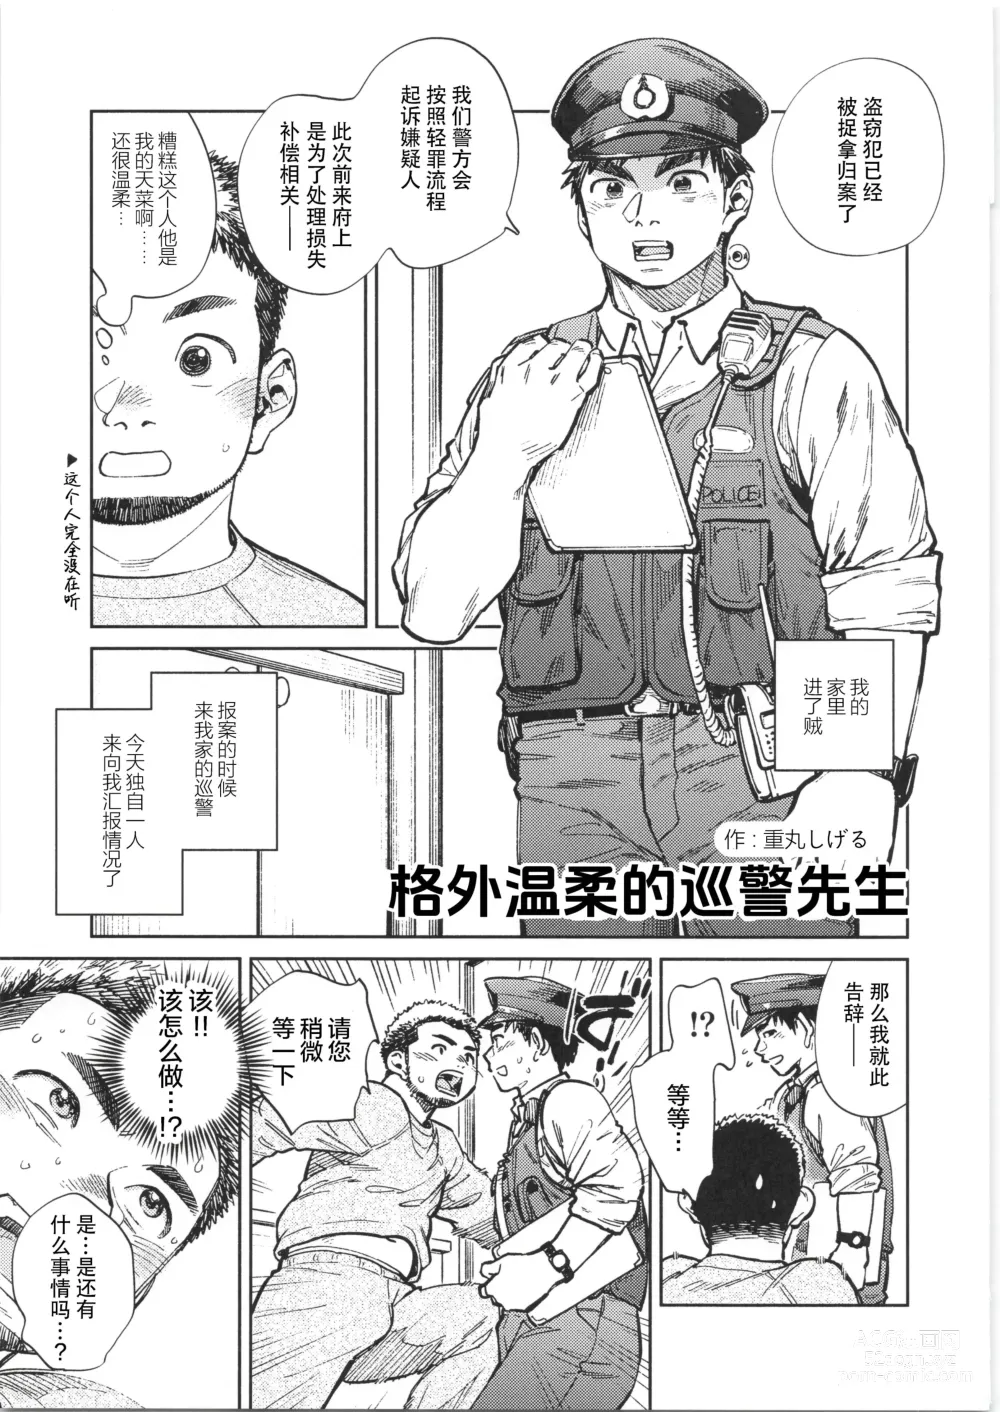 Page 18 of manga CHOGOKIN-004